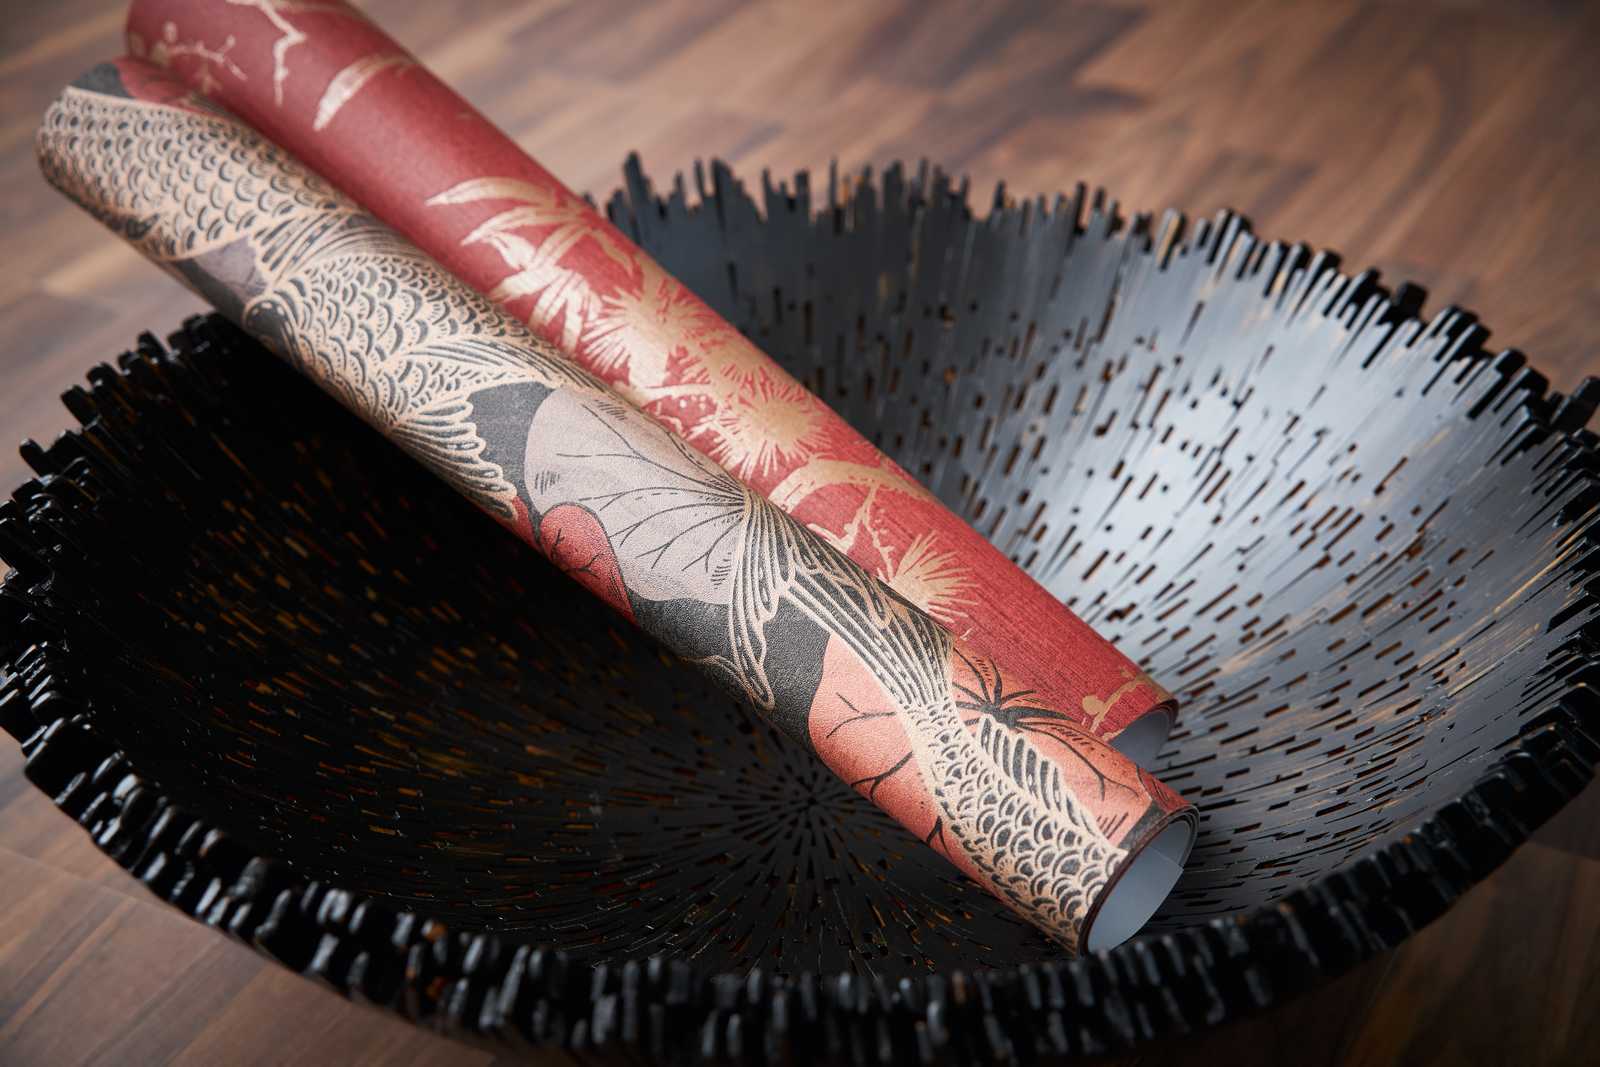             Papier peint à motifs Koi motif avec accents métalliques - marron, rouge, noir
        